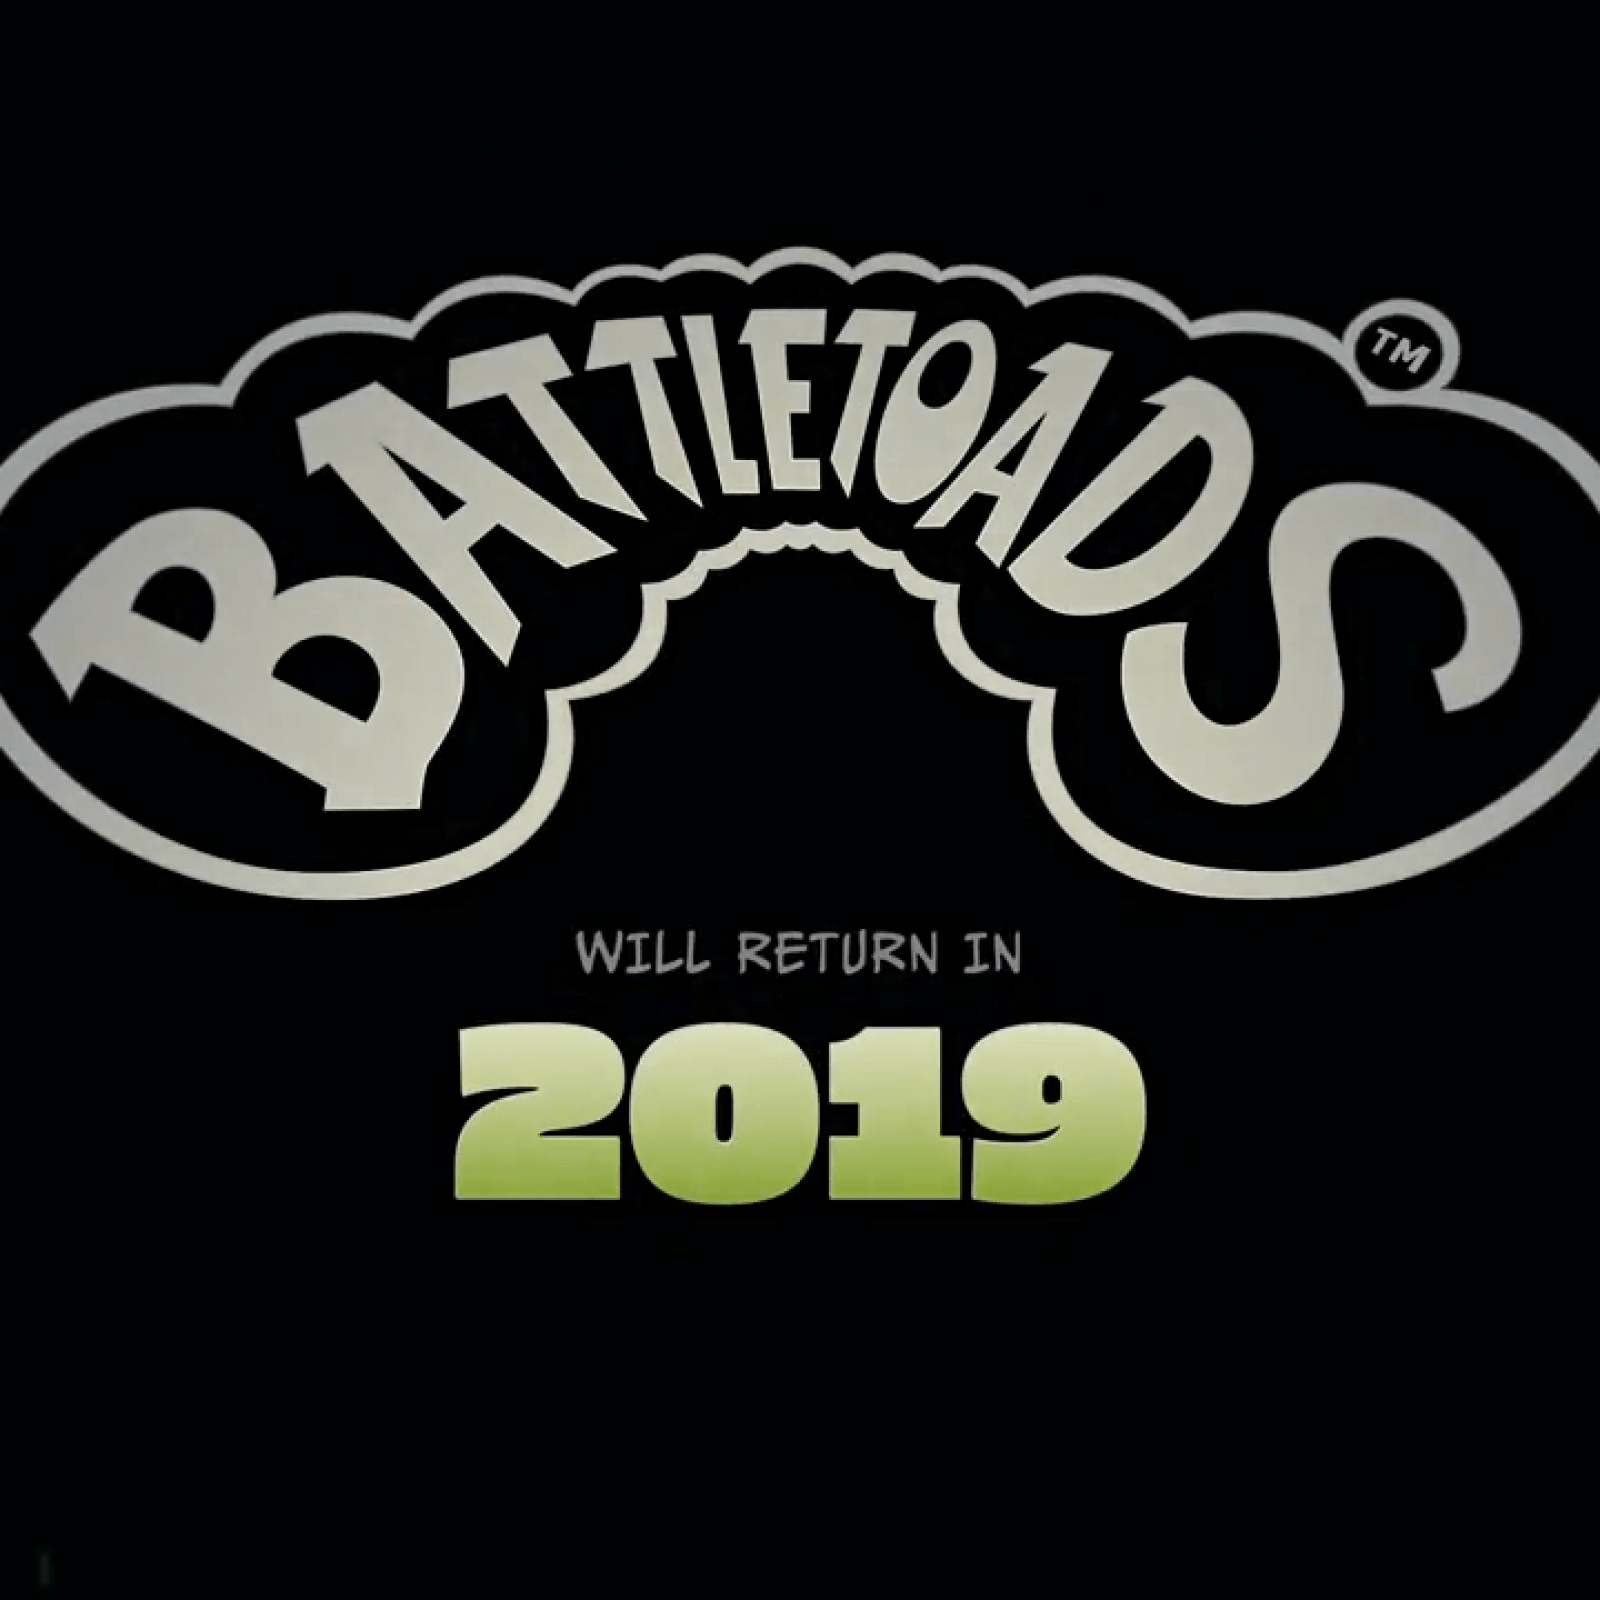 Battletoads Logo - Battletoads' Release Date? Developers Silently Work on Intergalactic